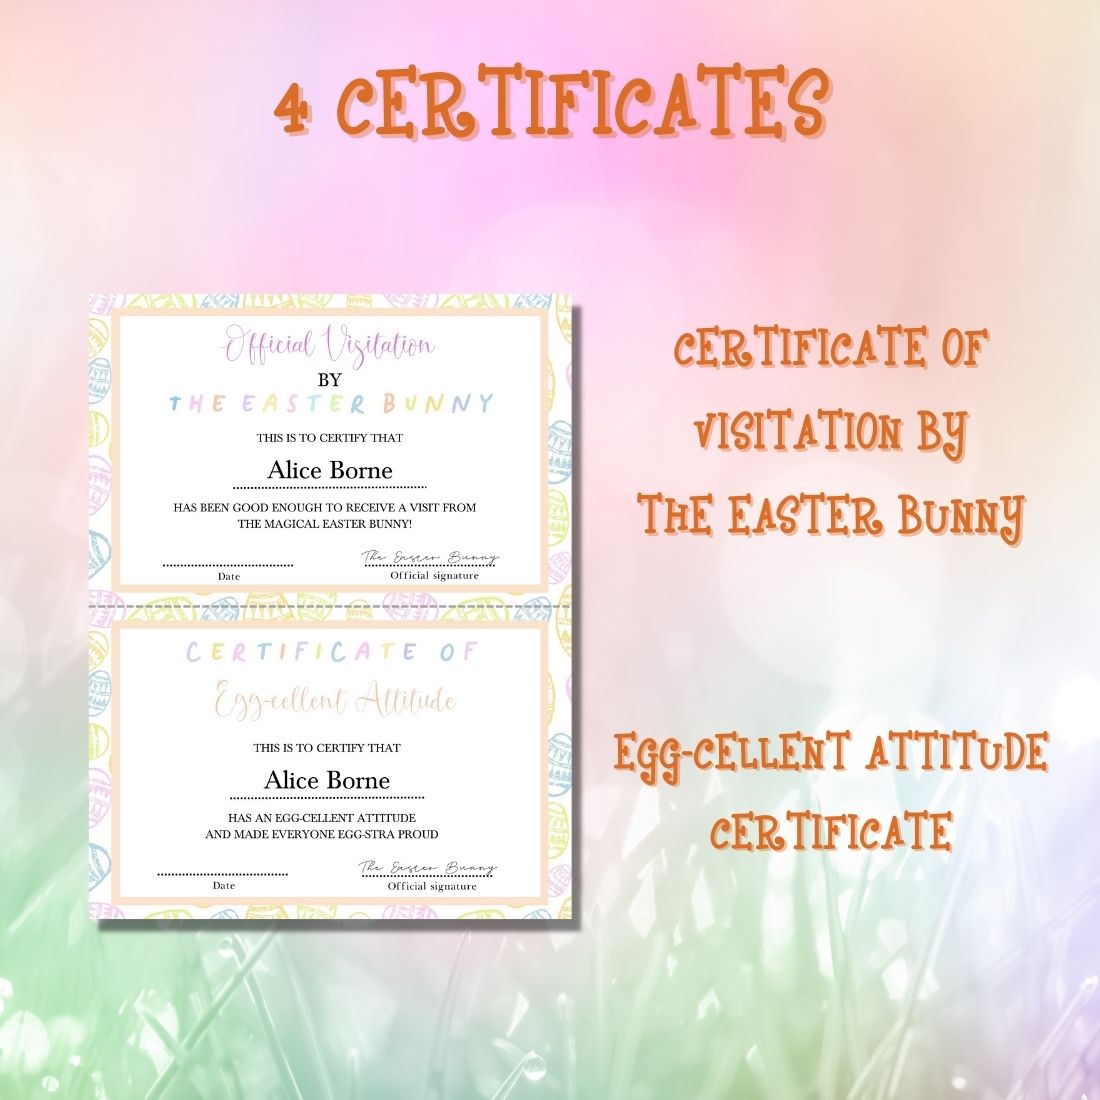 Certificate of a certificate of a certificate of a certificate of a certificate of a.